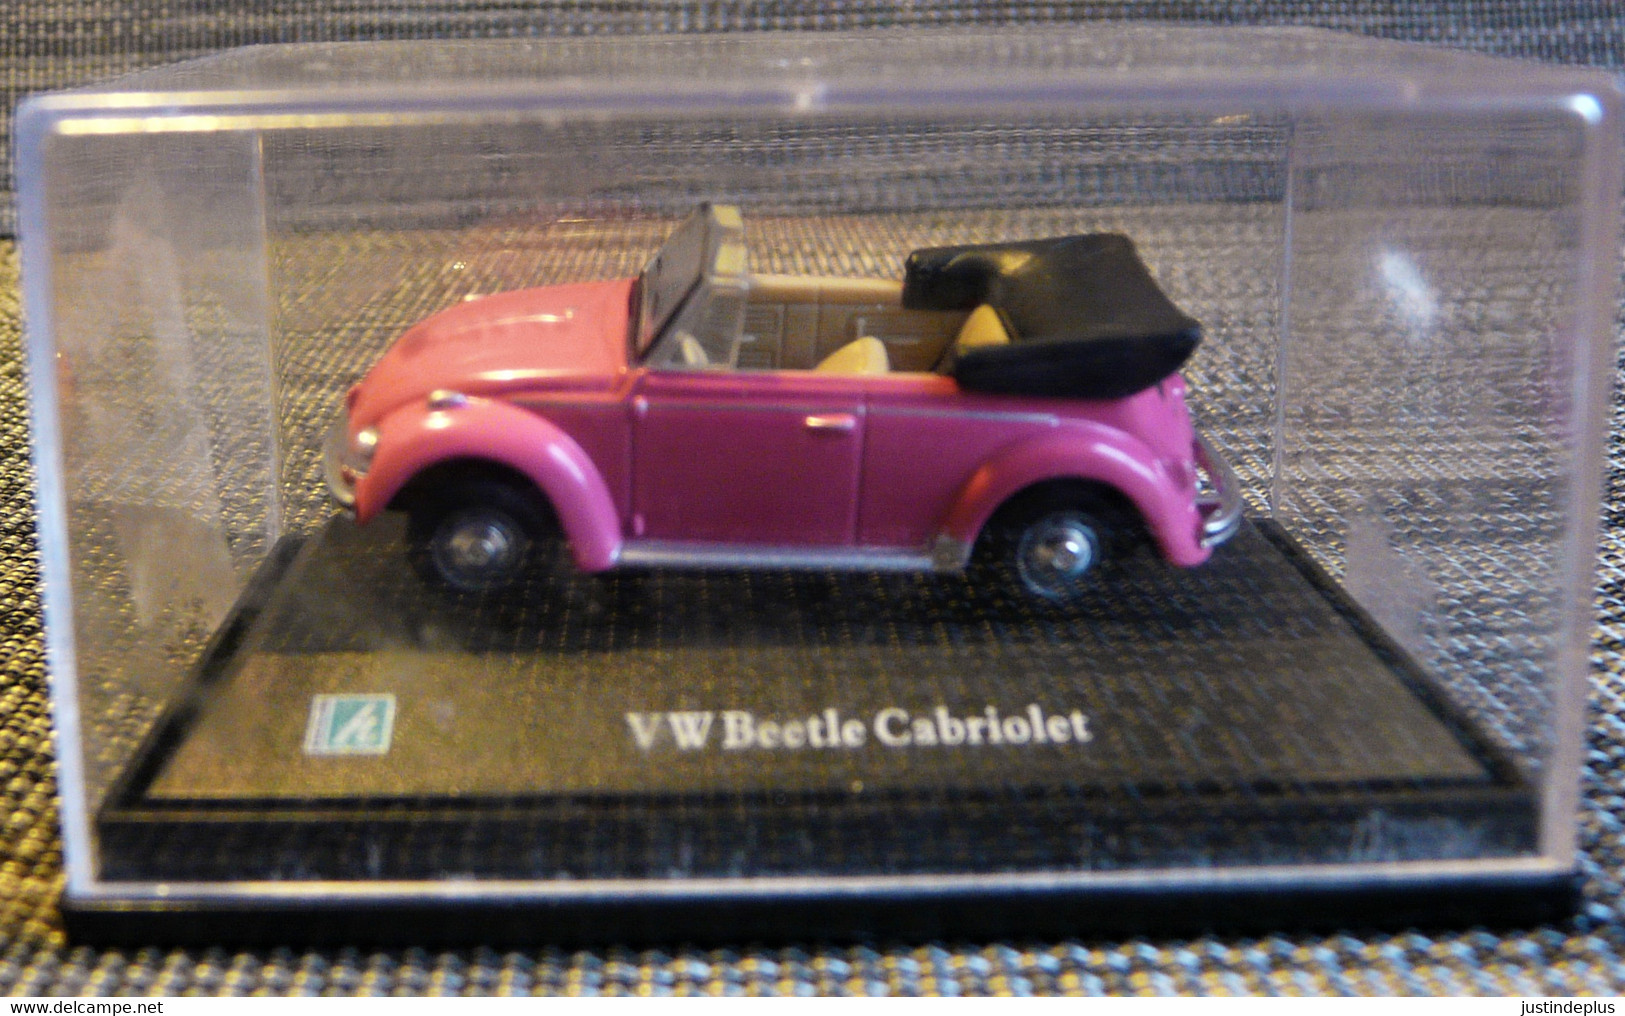 VW BEETLE CABRIOLET ROSE WOLKSVAGEN COCCINELLE ECHELLE 1/72EME - Escala 1:72